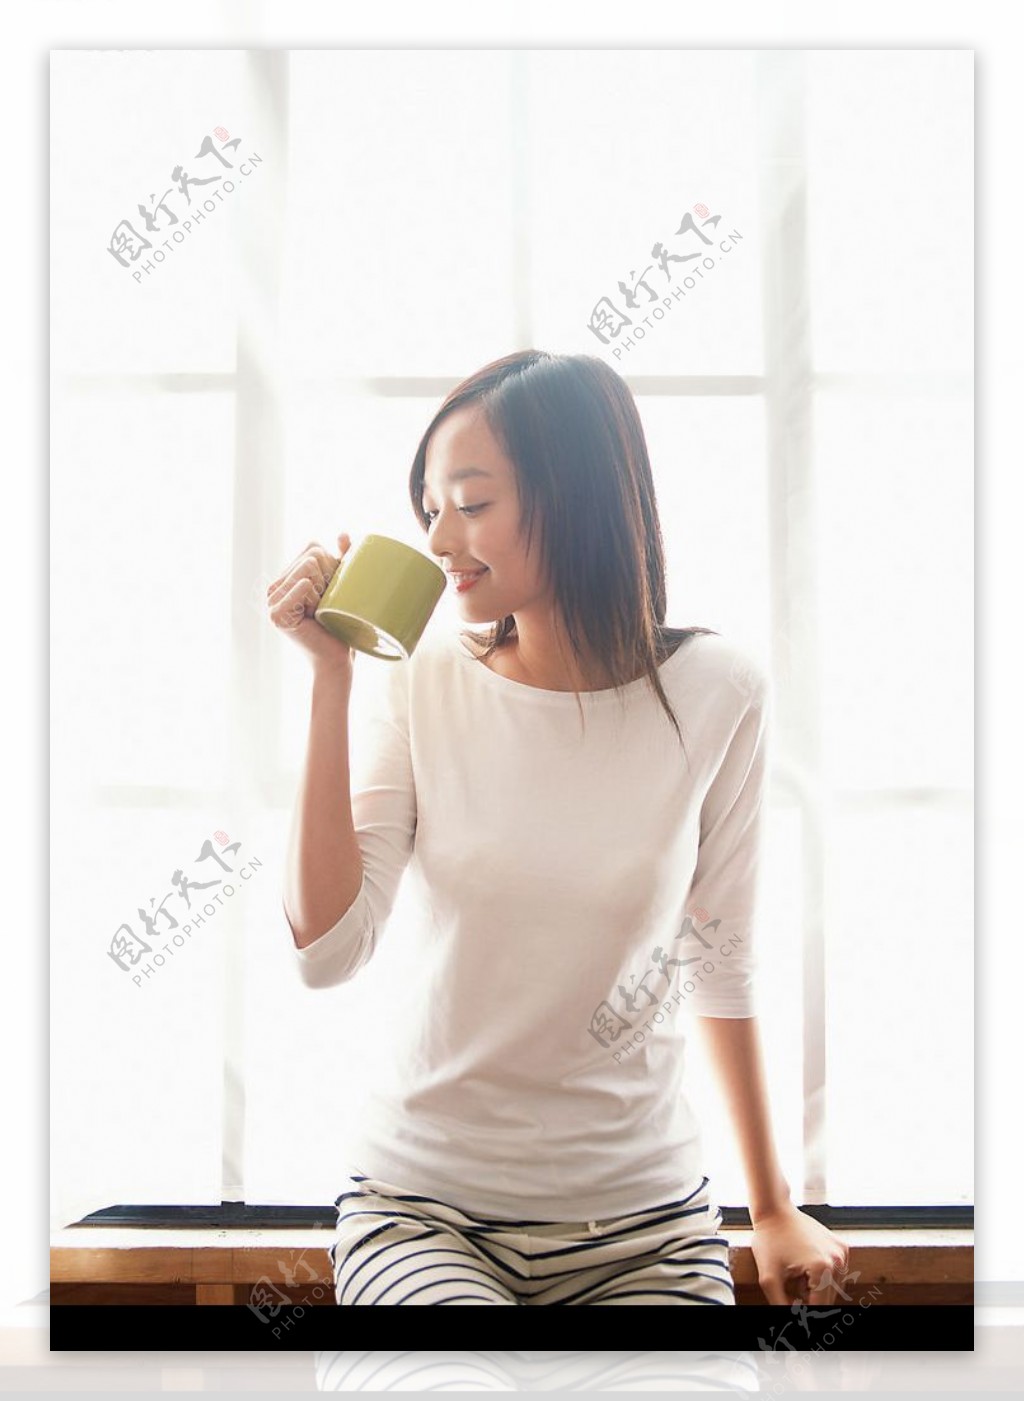 坐着喝茶的女孩儿图片